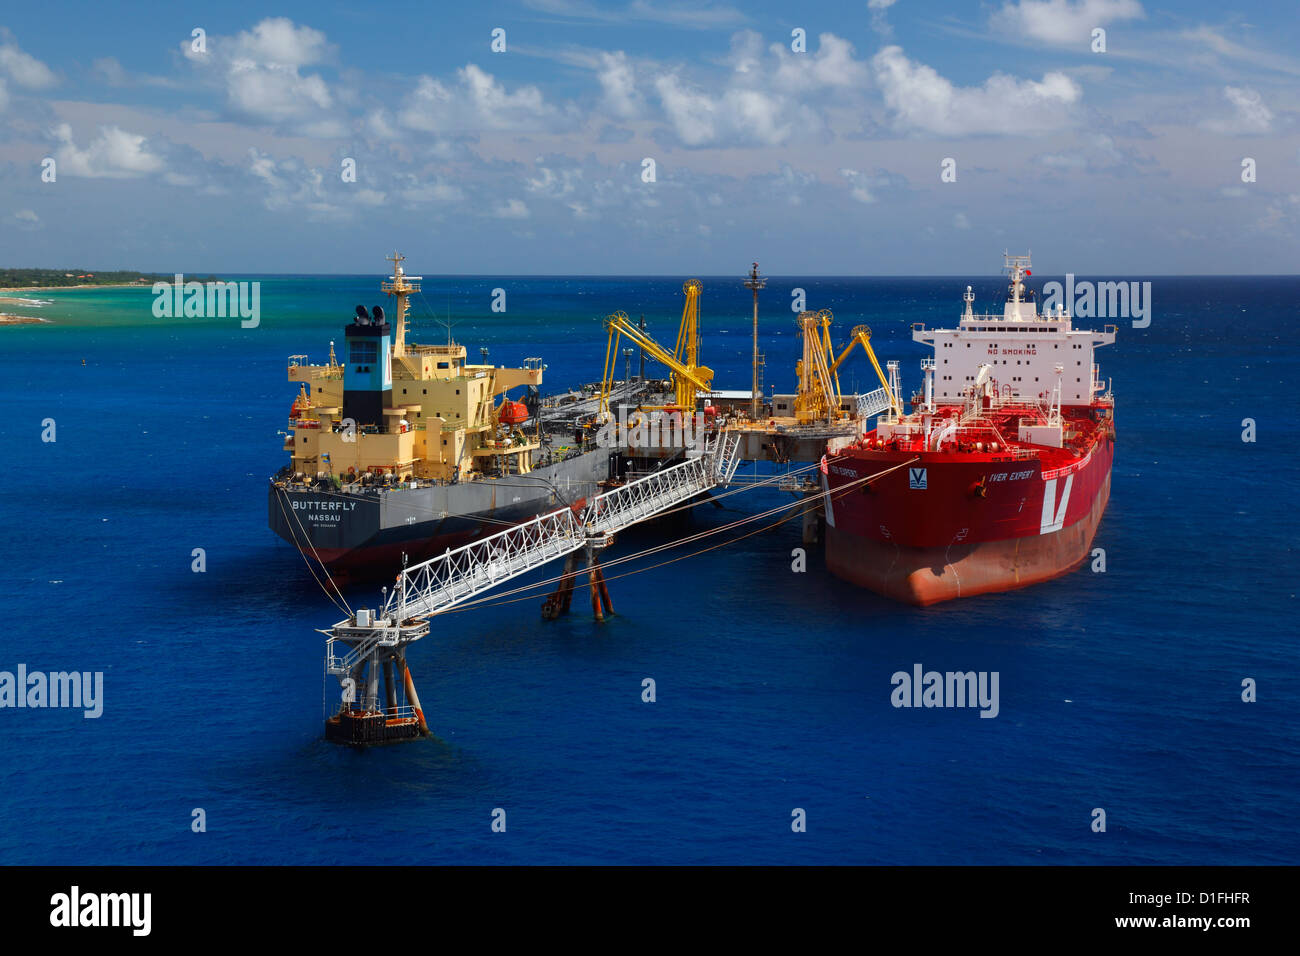 Chargement des pétroliers. Freeport - Bahamas Banque D'Images